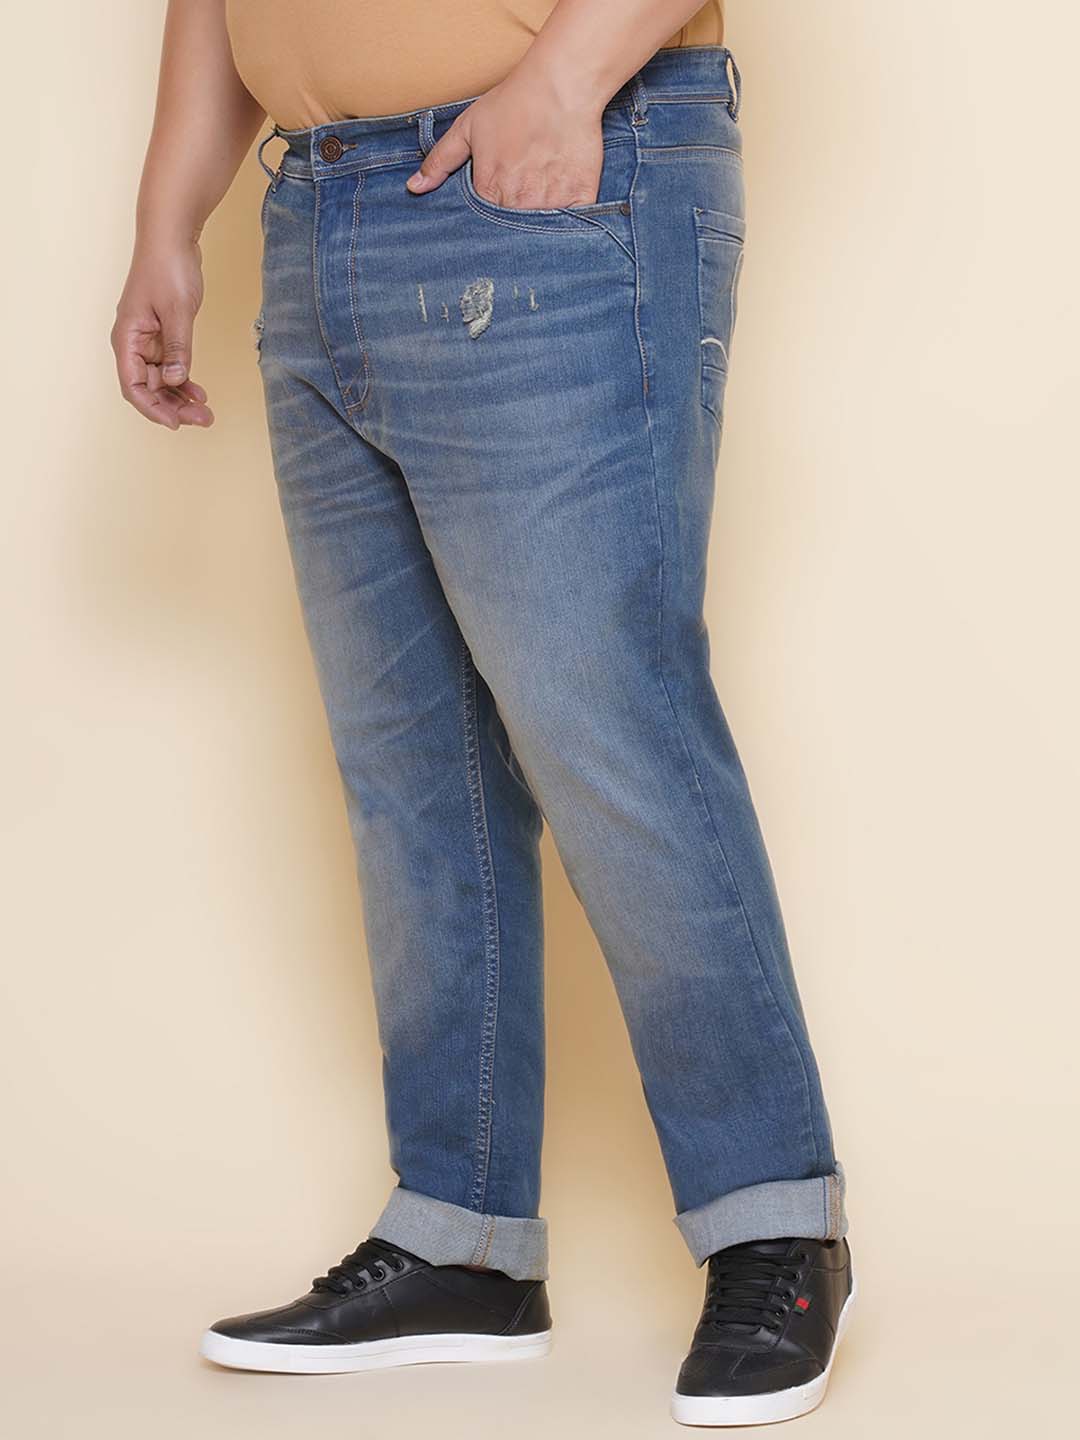 bottomwear/jeans/EJPJ25137/ejpj25137-4.jpg